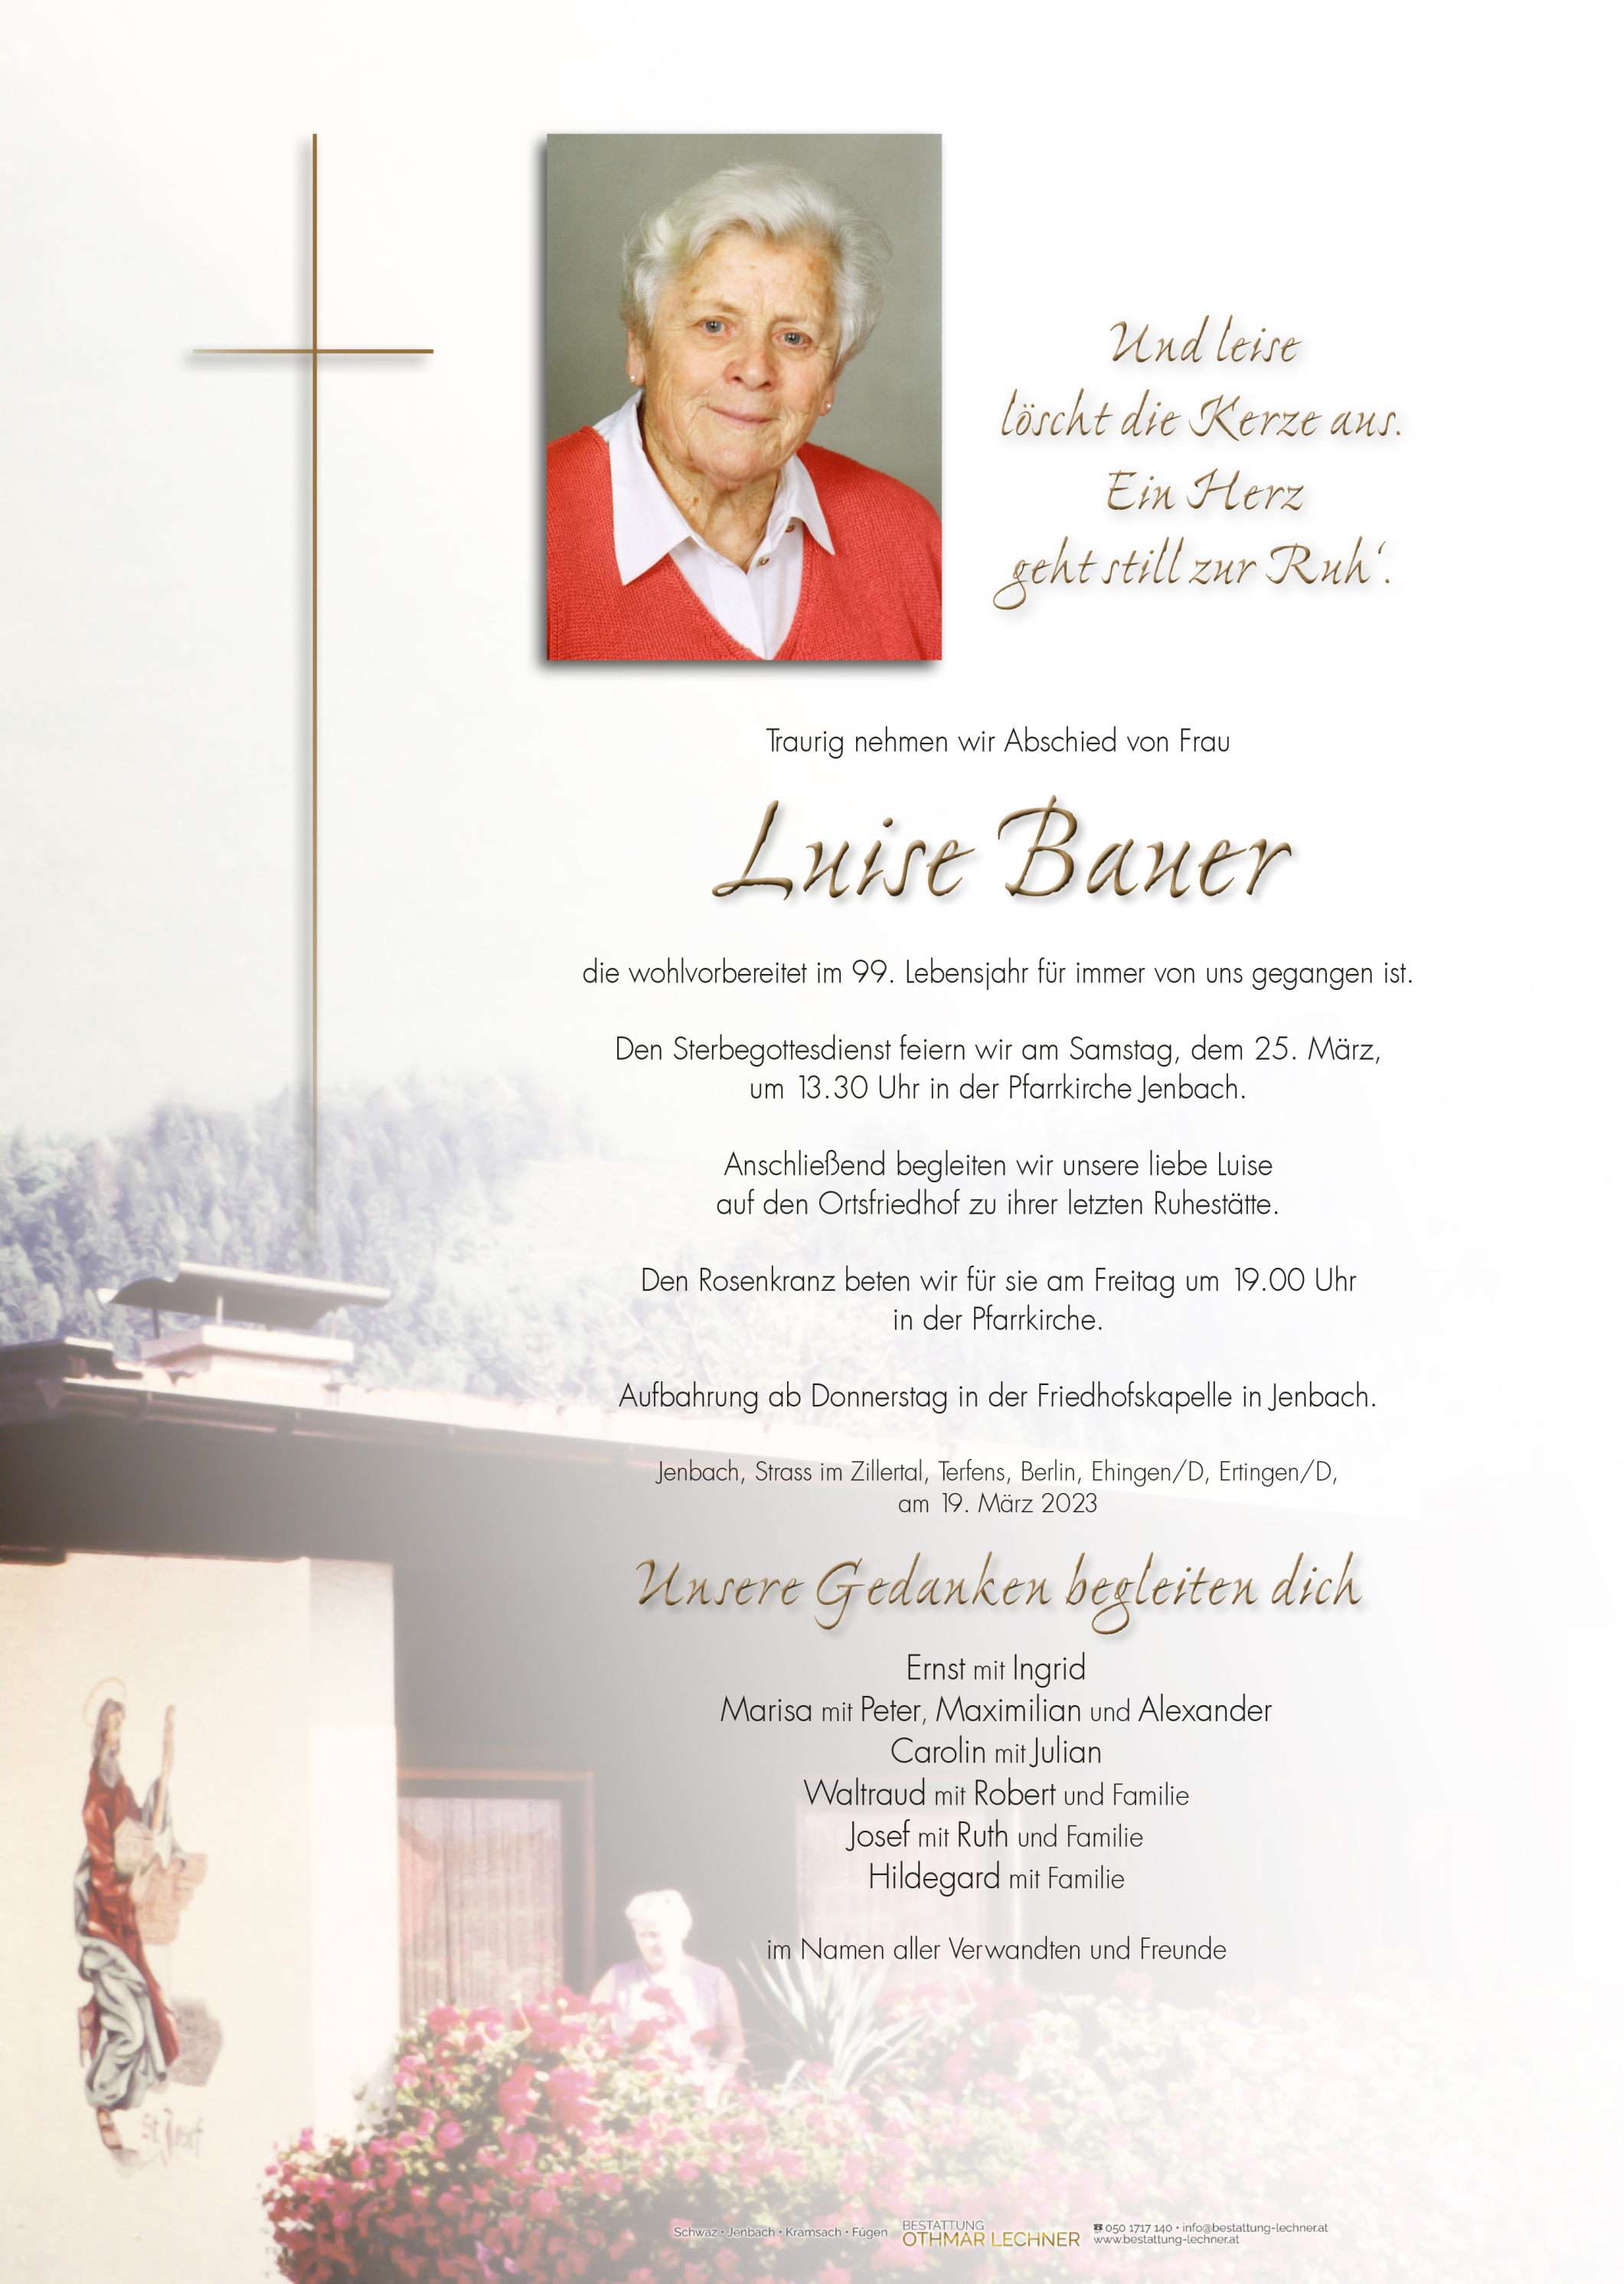 Luise Bauer